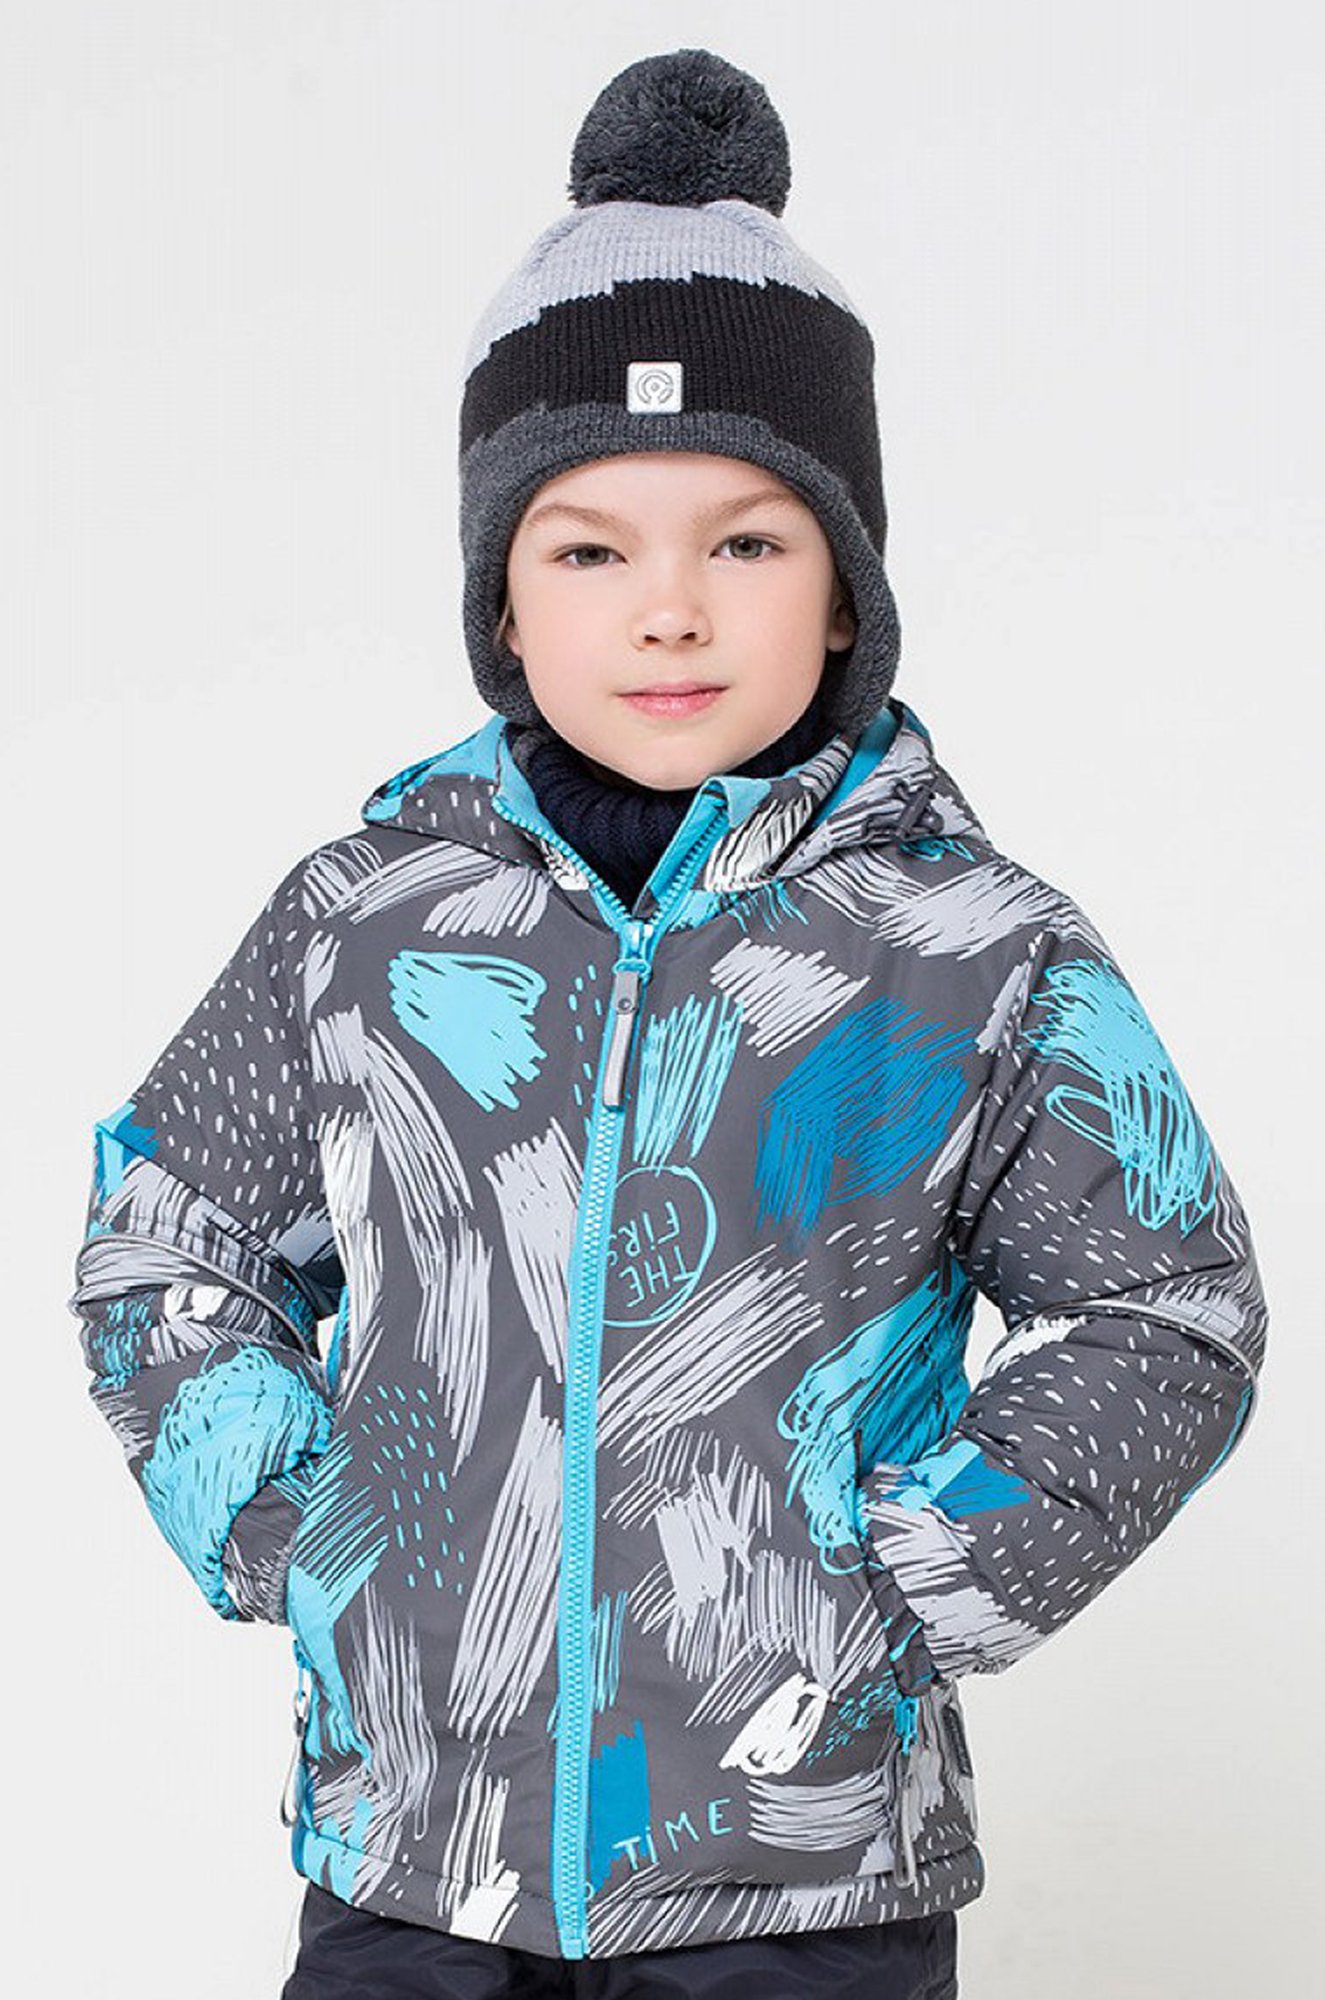 Куртка для мальчика 98. Куртка Crockid вк36038 для мальчика зимняя. Куртка Крокид для мальчика зима 104. Крокид куртки зимние для мальчиков 2020. Куртка Крокид для мальчика зима 36062.